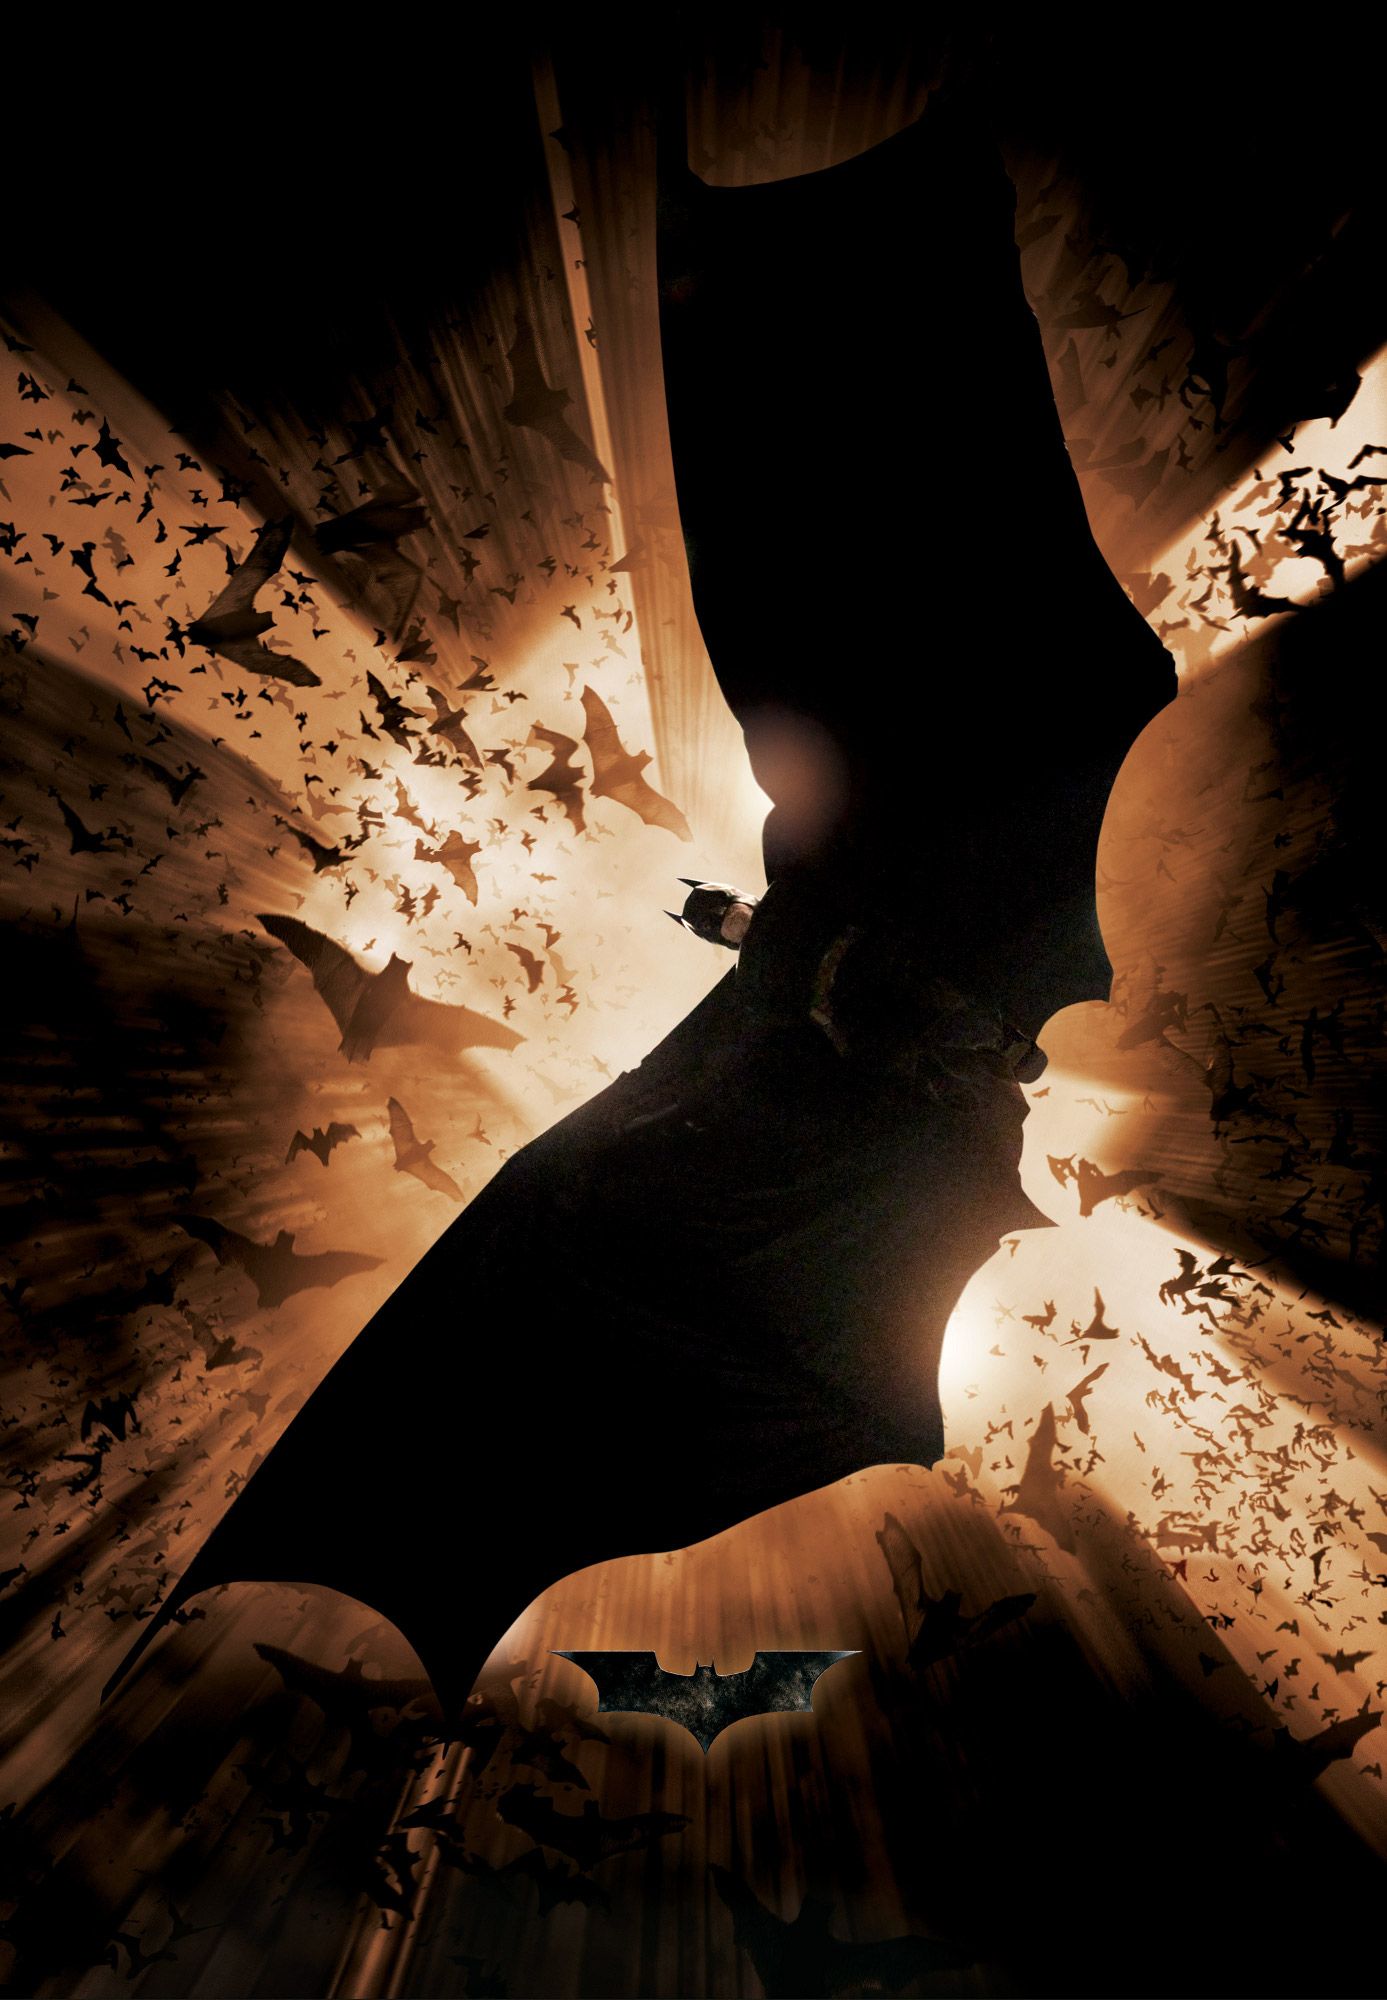 Download Batman Begins Wallpaper 1387x2000 Wallpoper